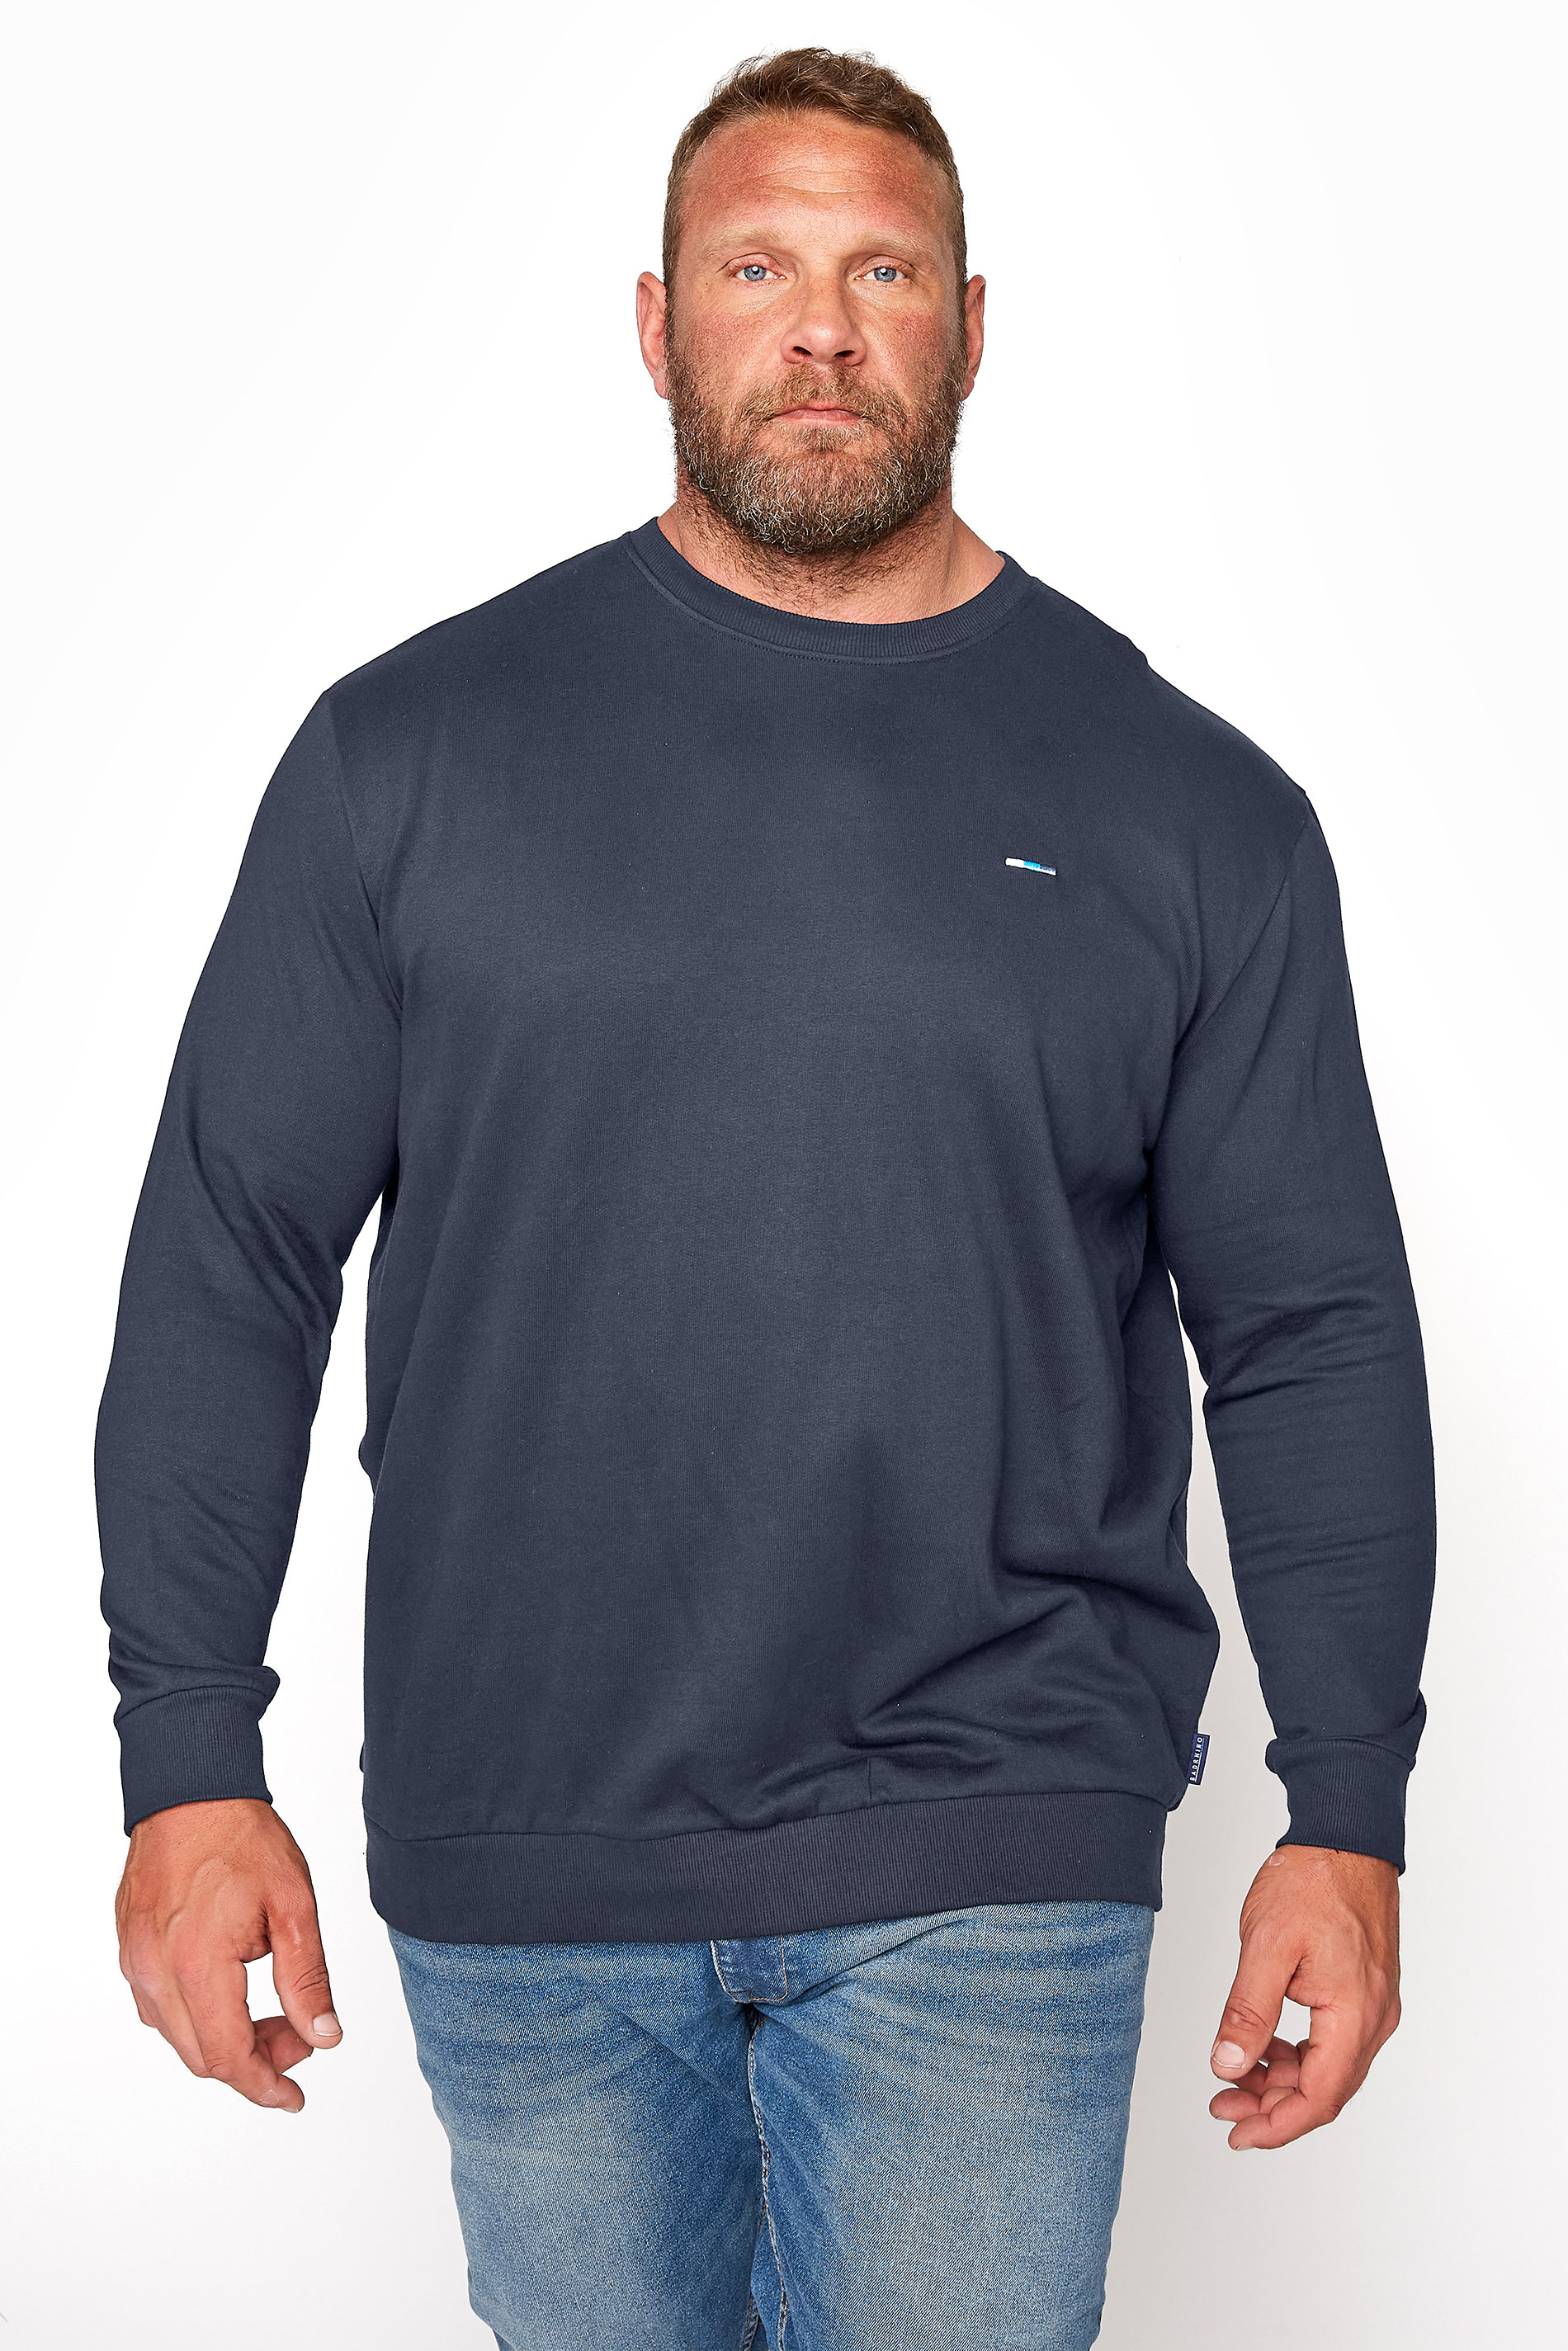 BadRhino Navy Blue Essential Sweatshirt | BadRhino 1